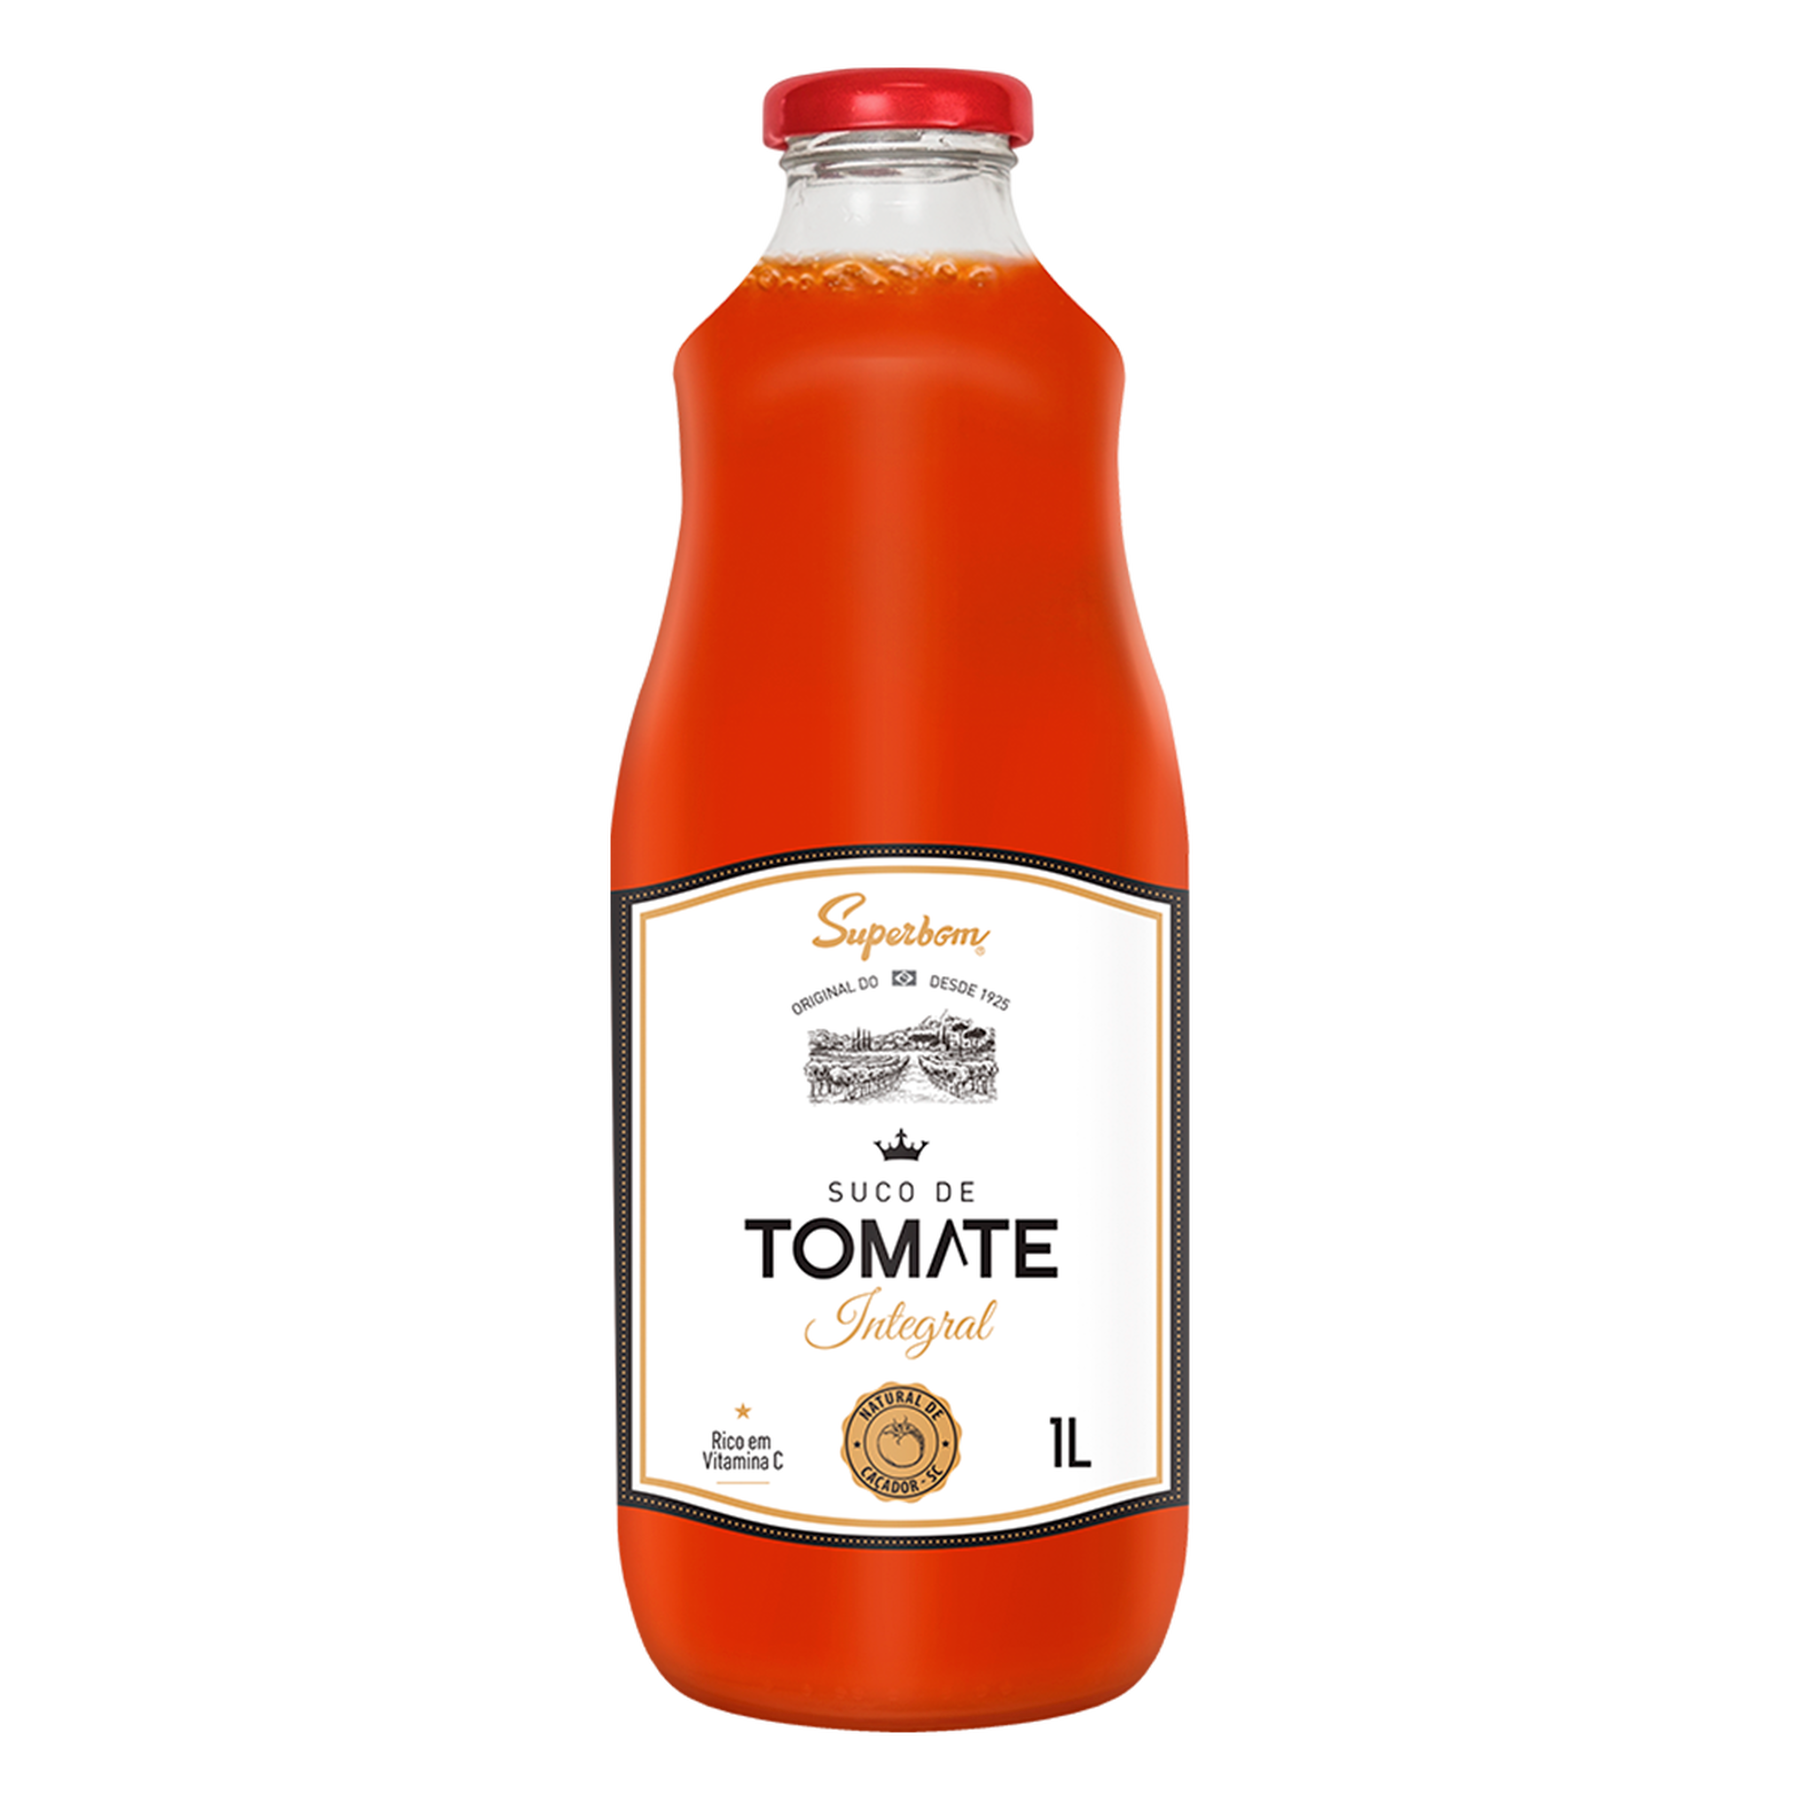 Suco de Tomate Superbom Garrafa 1l